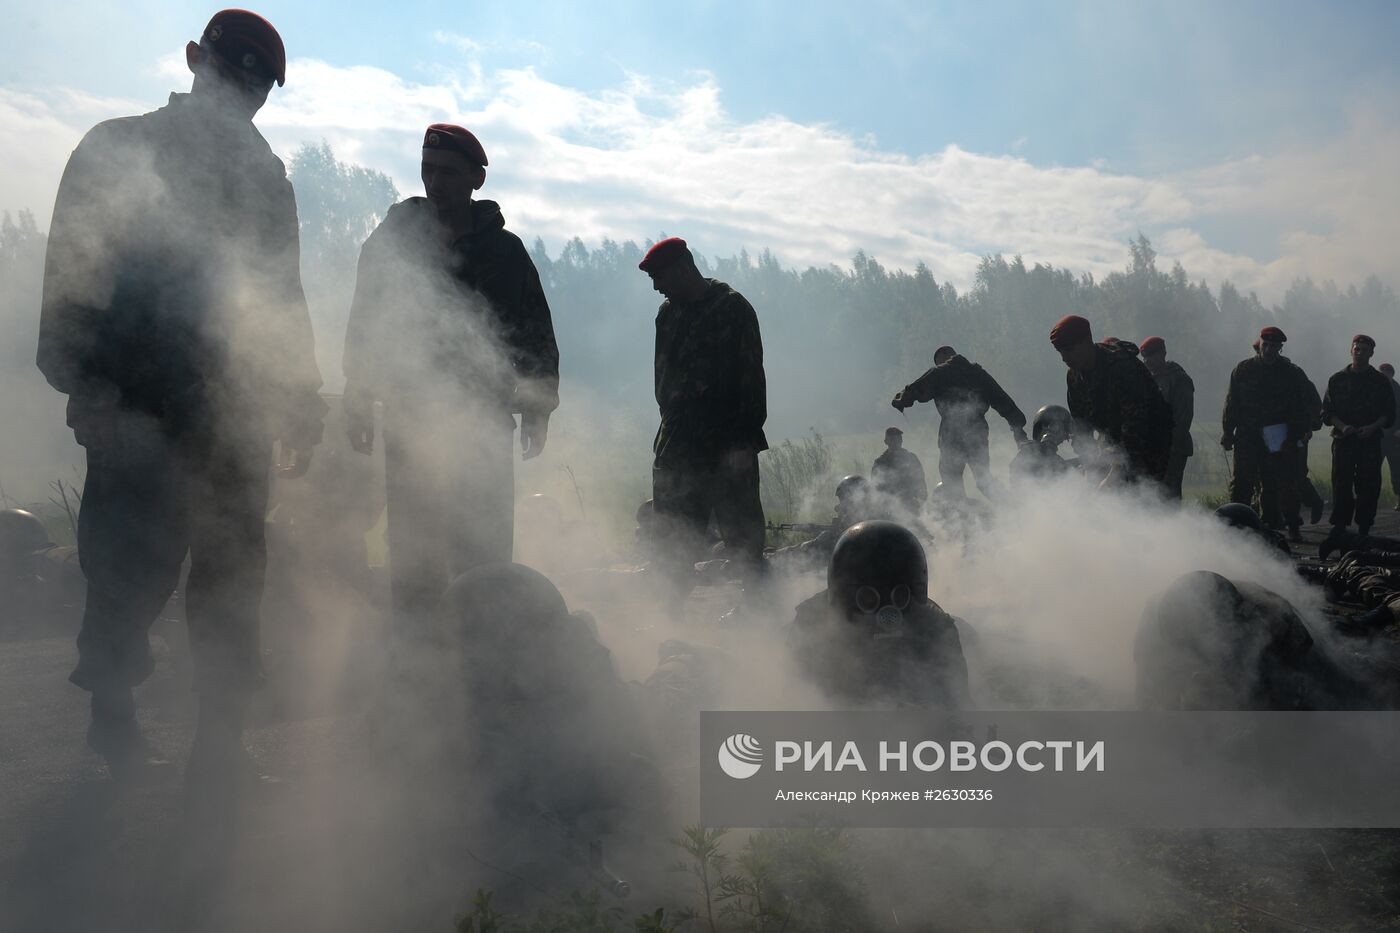 Испытания на право ношения крапового берета в Новосибирске